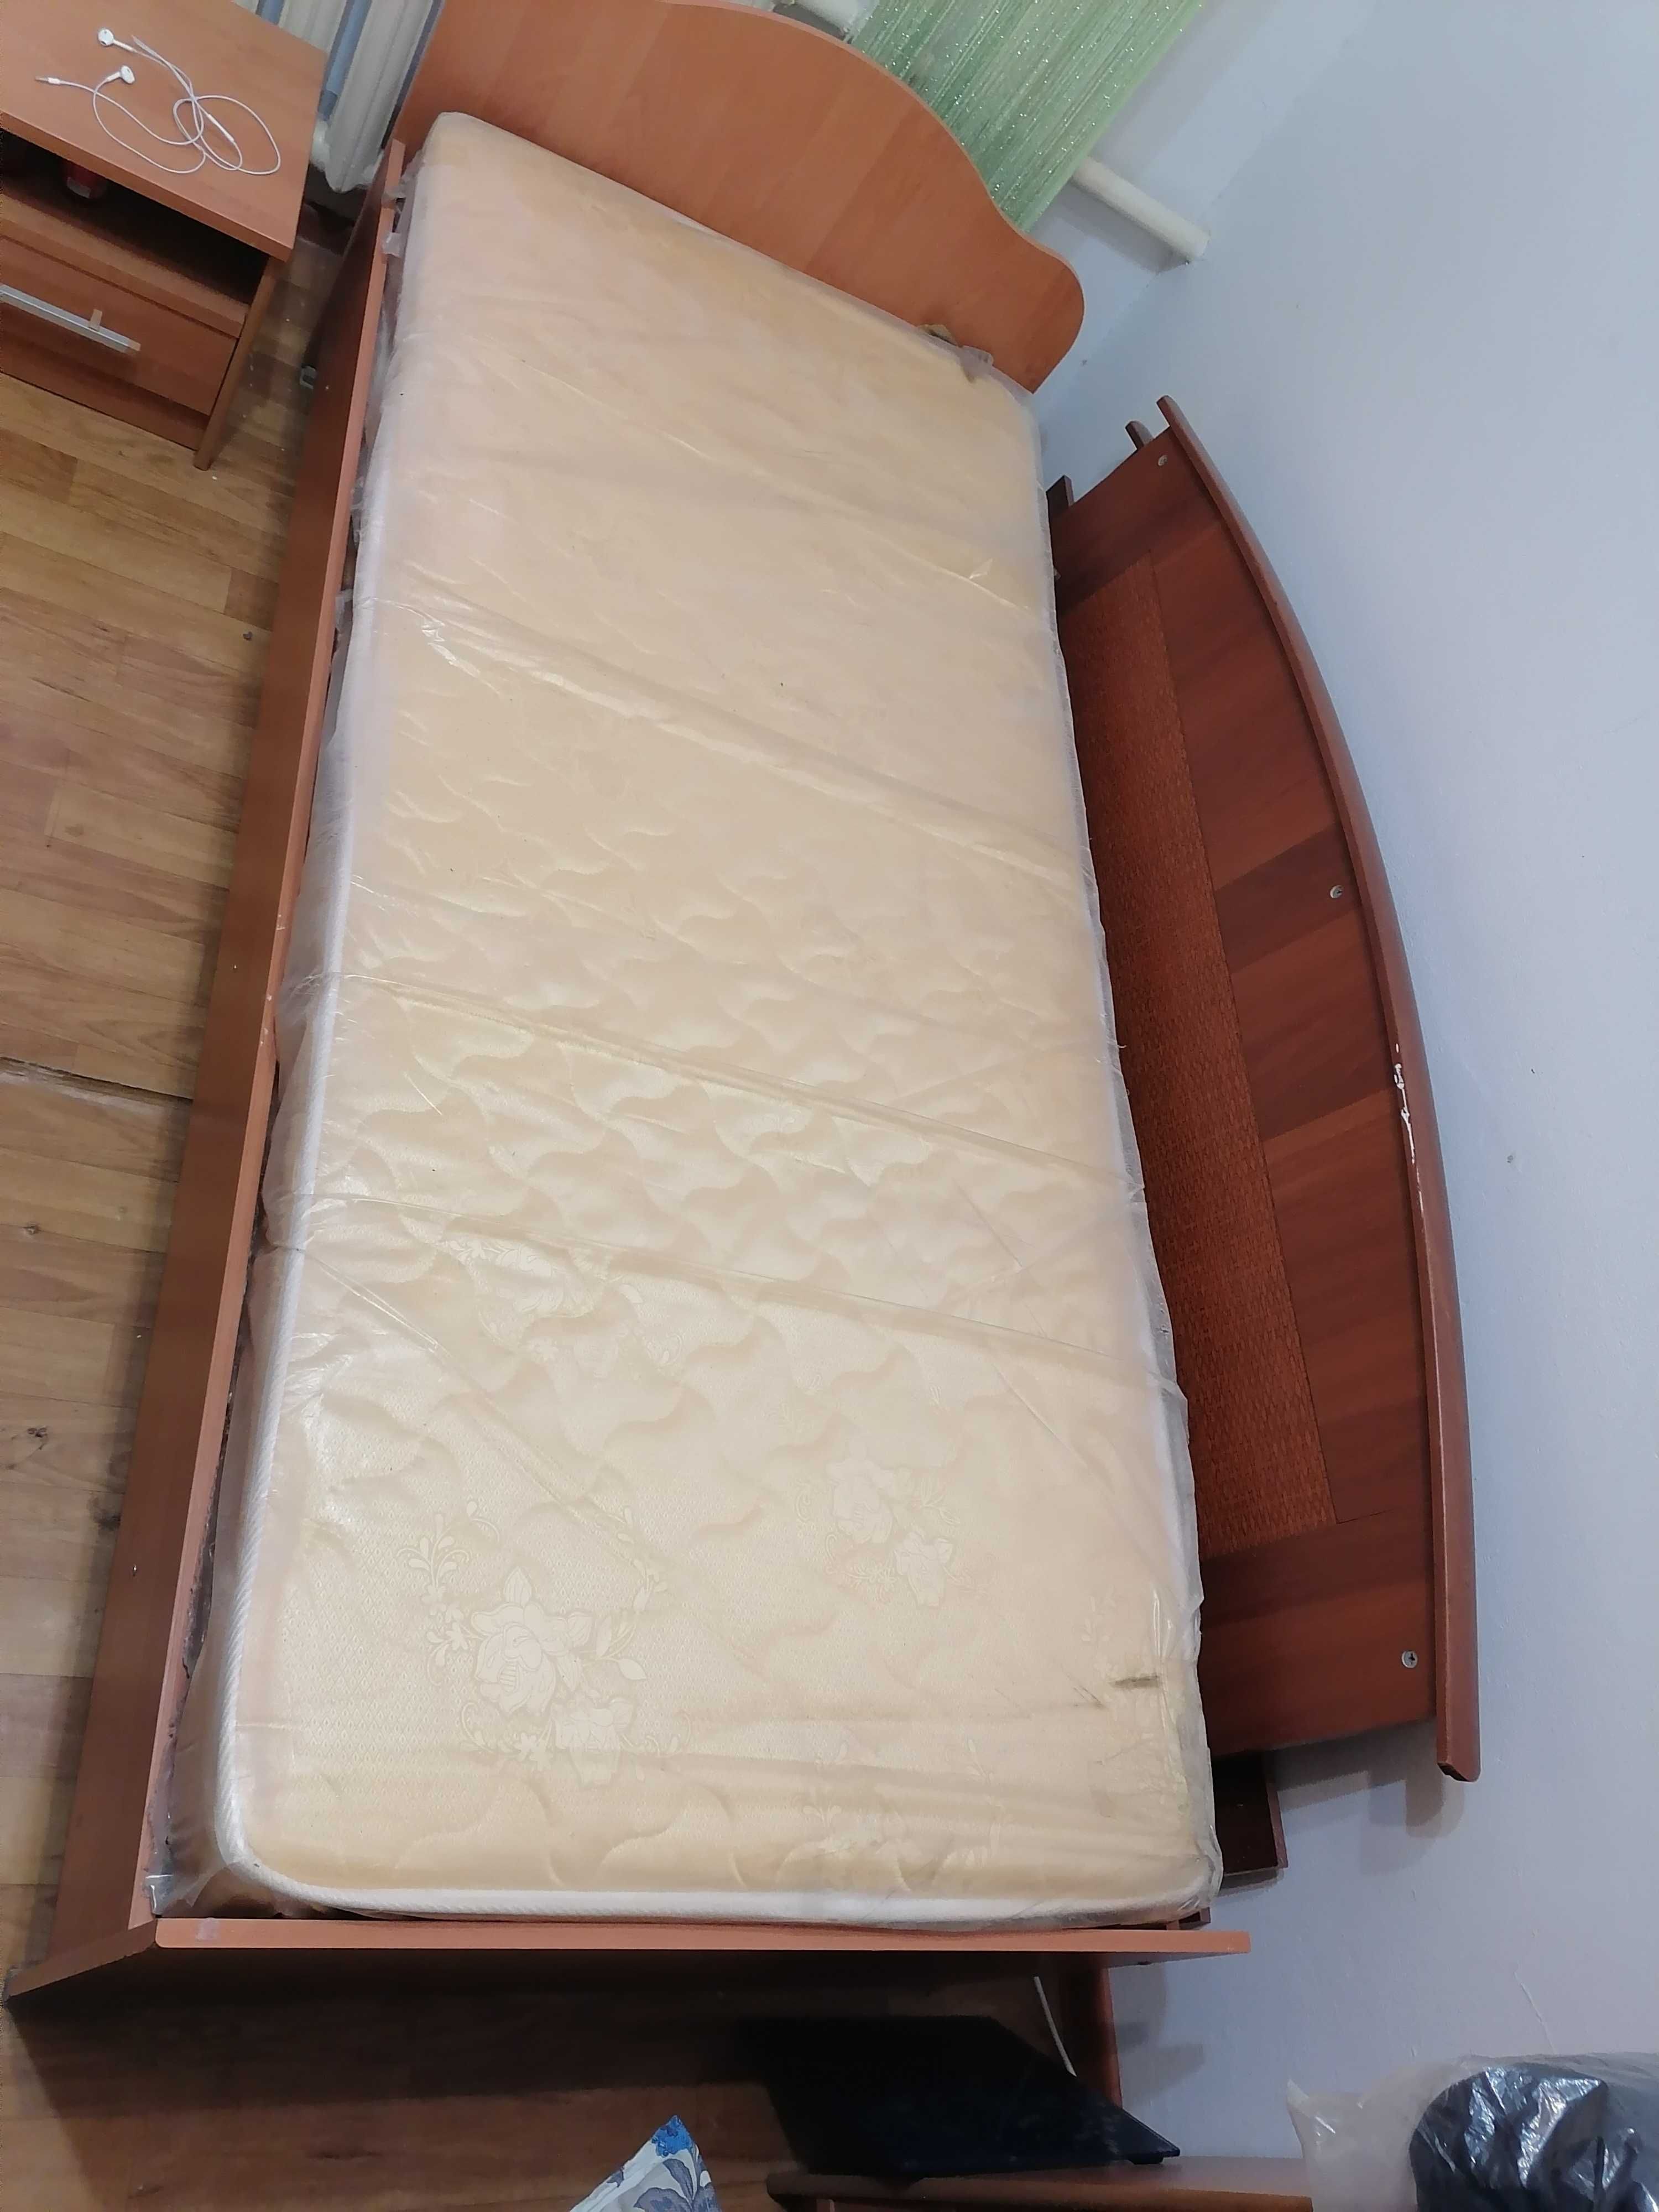 Продаётся спальный кровать